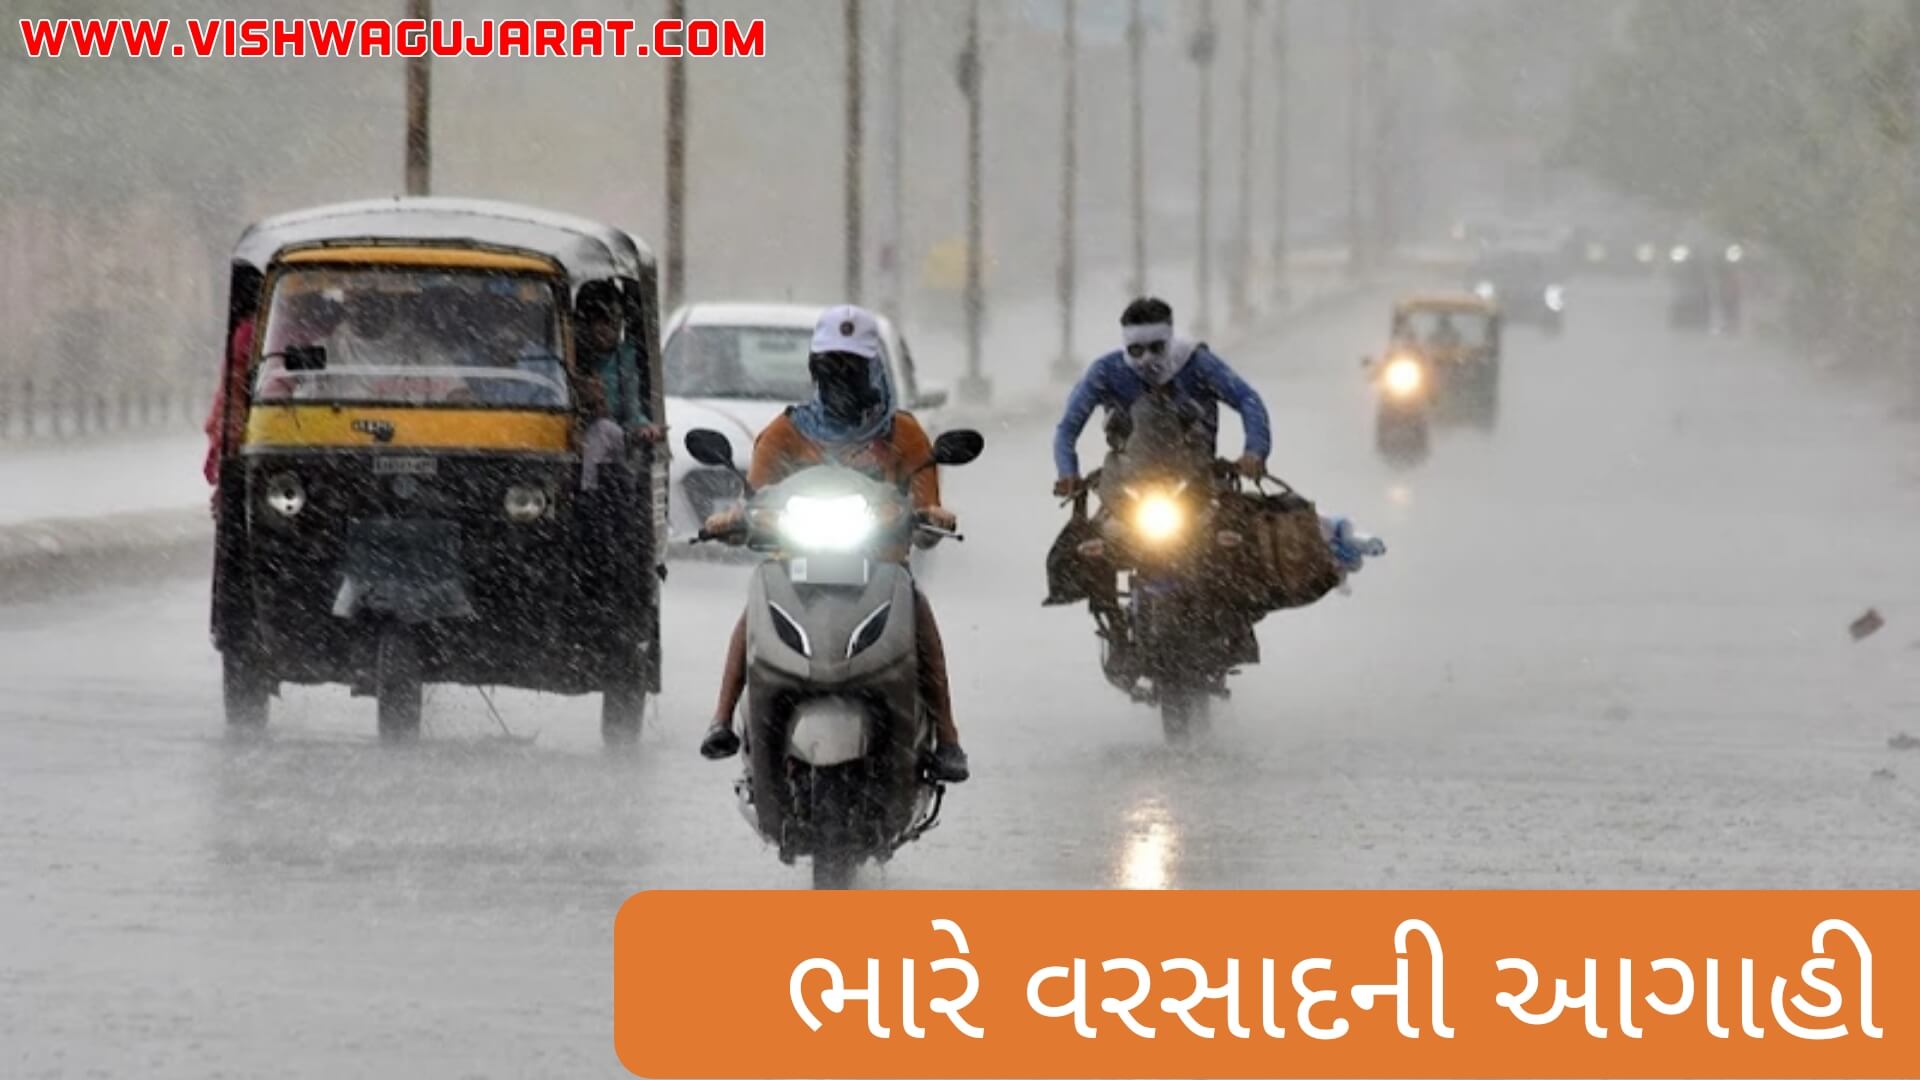 ભારે વરસાદની આગાહી / આગામી દિવસોમાં ગુજરાતમાં પડશે ભારેથી અતિભારે વરસાદ